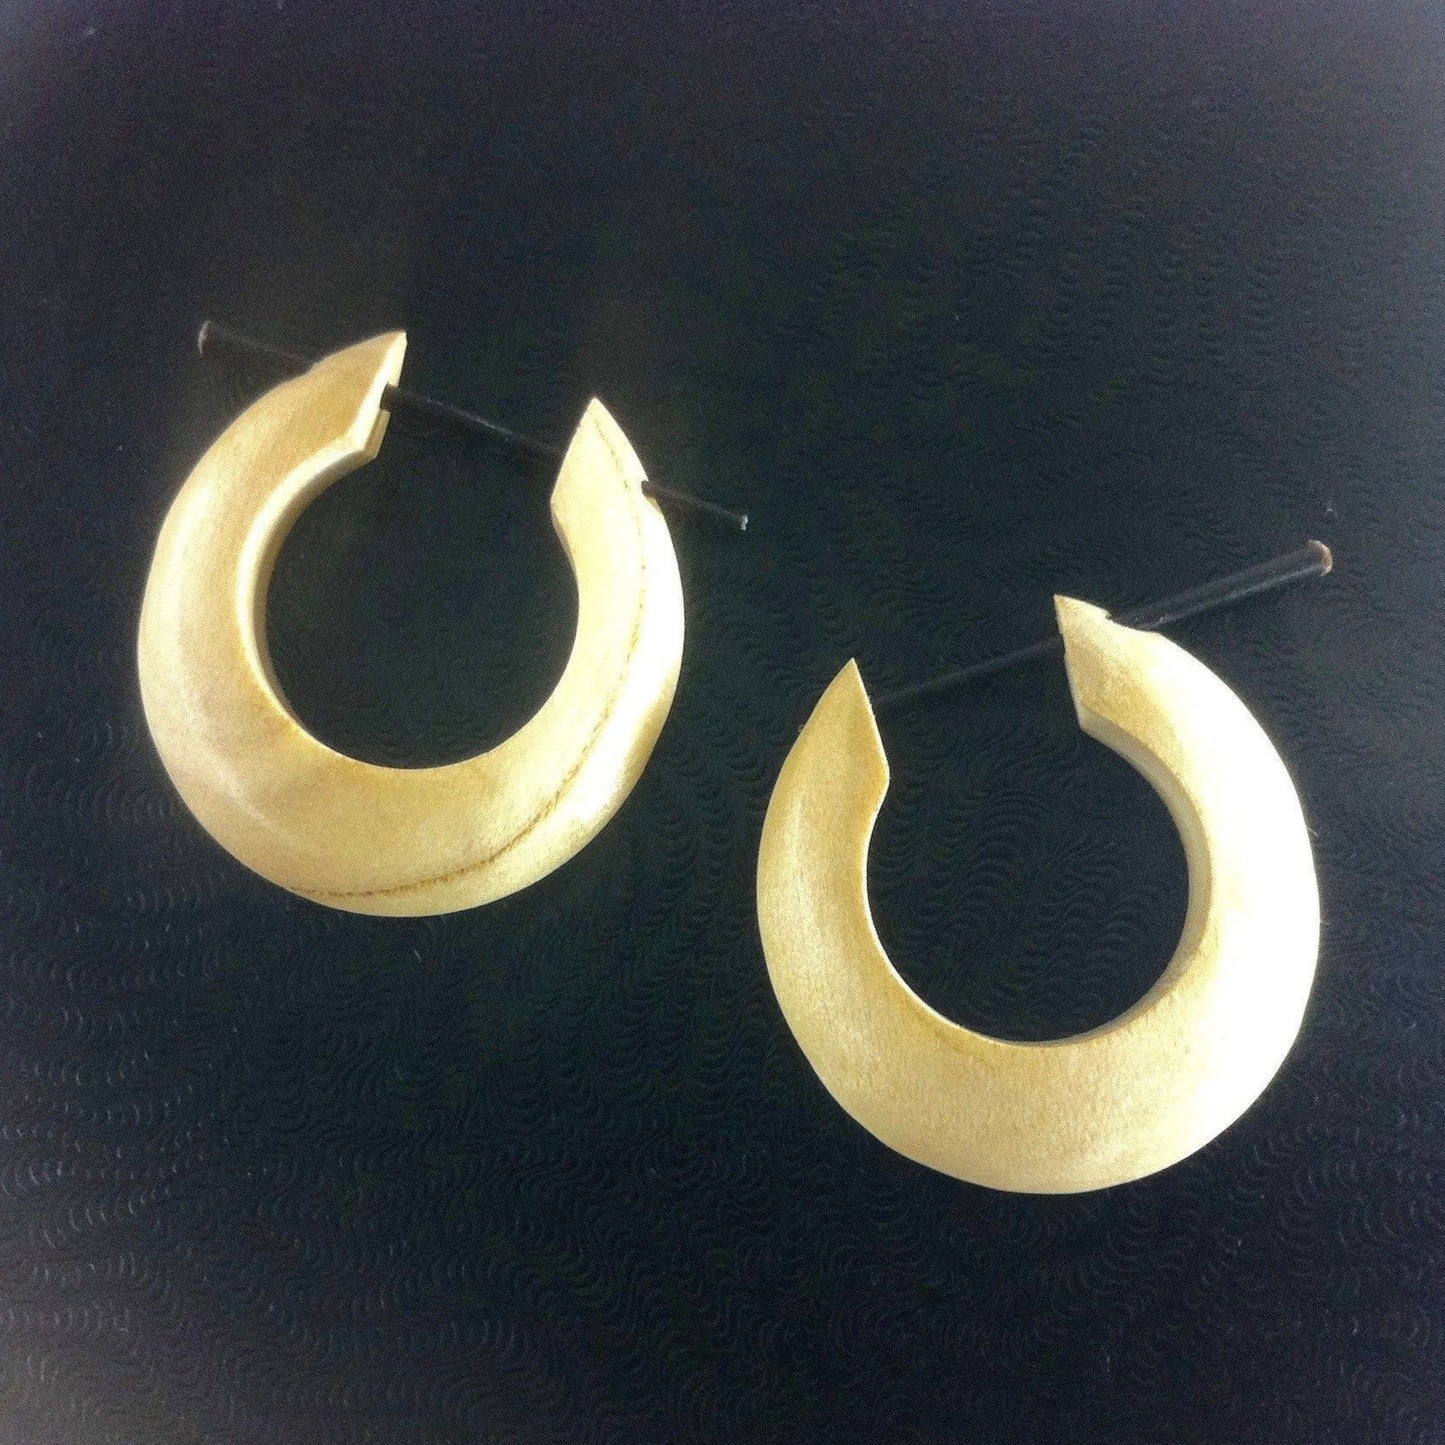 Wood Earrings :|: Medium Large Basic Hoops, ivorywood1 inch W x 1 inch L. | Wooden Hoop Earrings